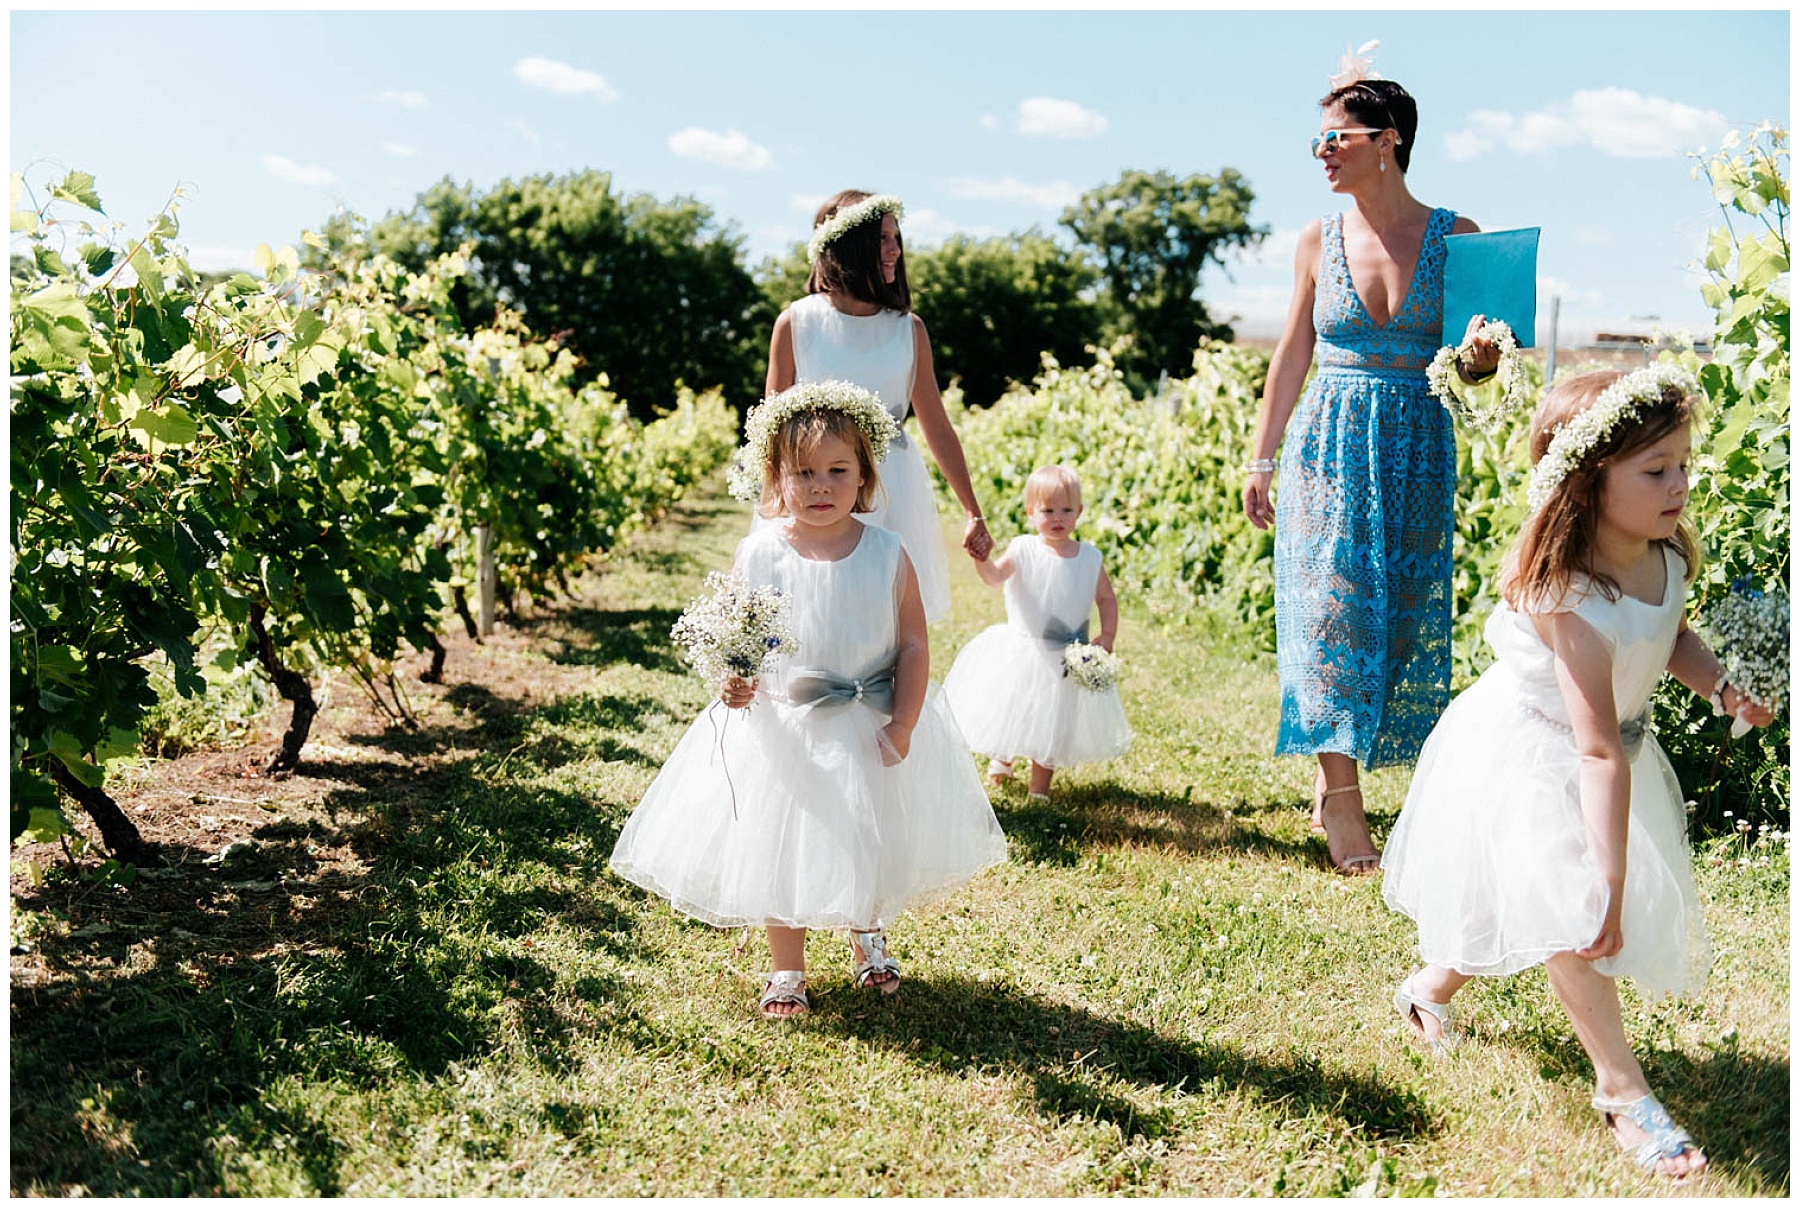 Les petites bouquetière avancent entre les vigne avec leurs petites robes blanches et leur bouquet de fleur à la main.